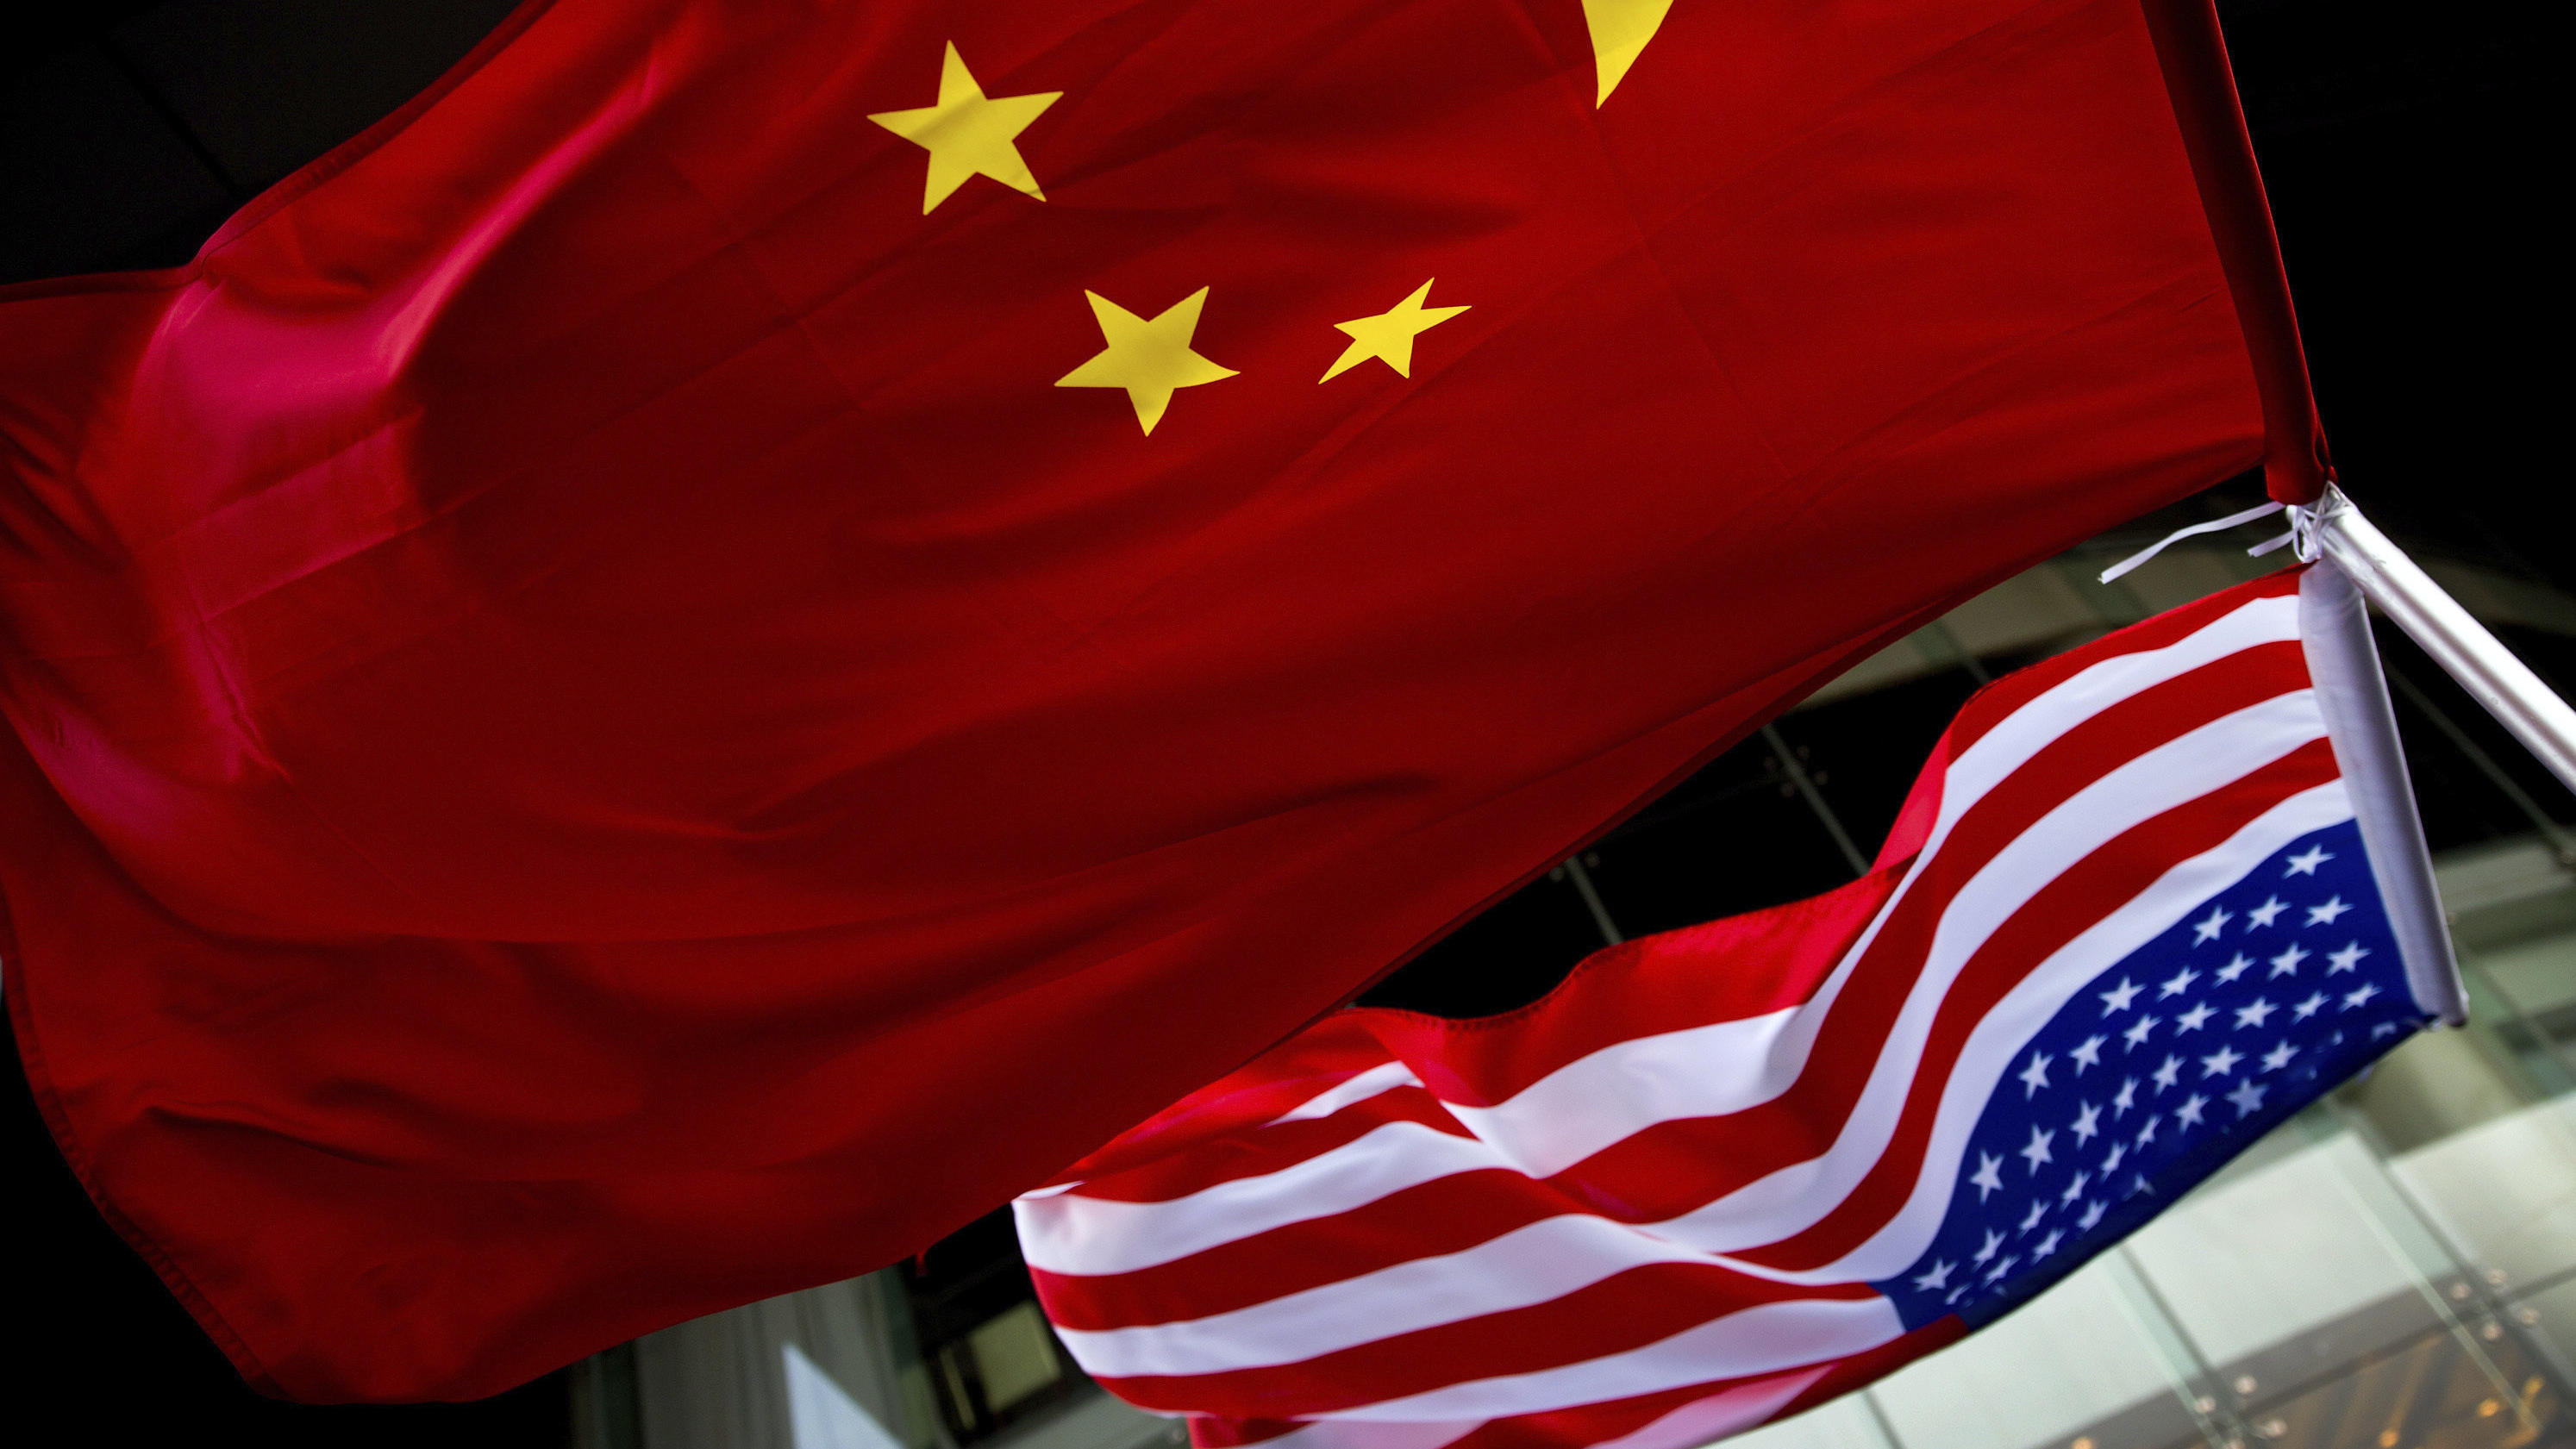 ARCHIV - 07.11.2012, China, Peking: Die US-amerikanische (unten) und chinesische Nationalflaggen wehen vor einem Hotel.    (zu dpa "China und USA wollen erstes Handelsabkommen unterzeichnen") Foto: Andy Wong/AP/dpa +++ dpa-Bildfunk +++